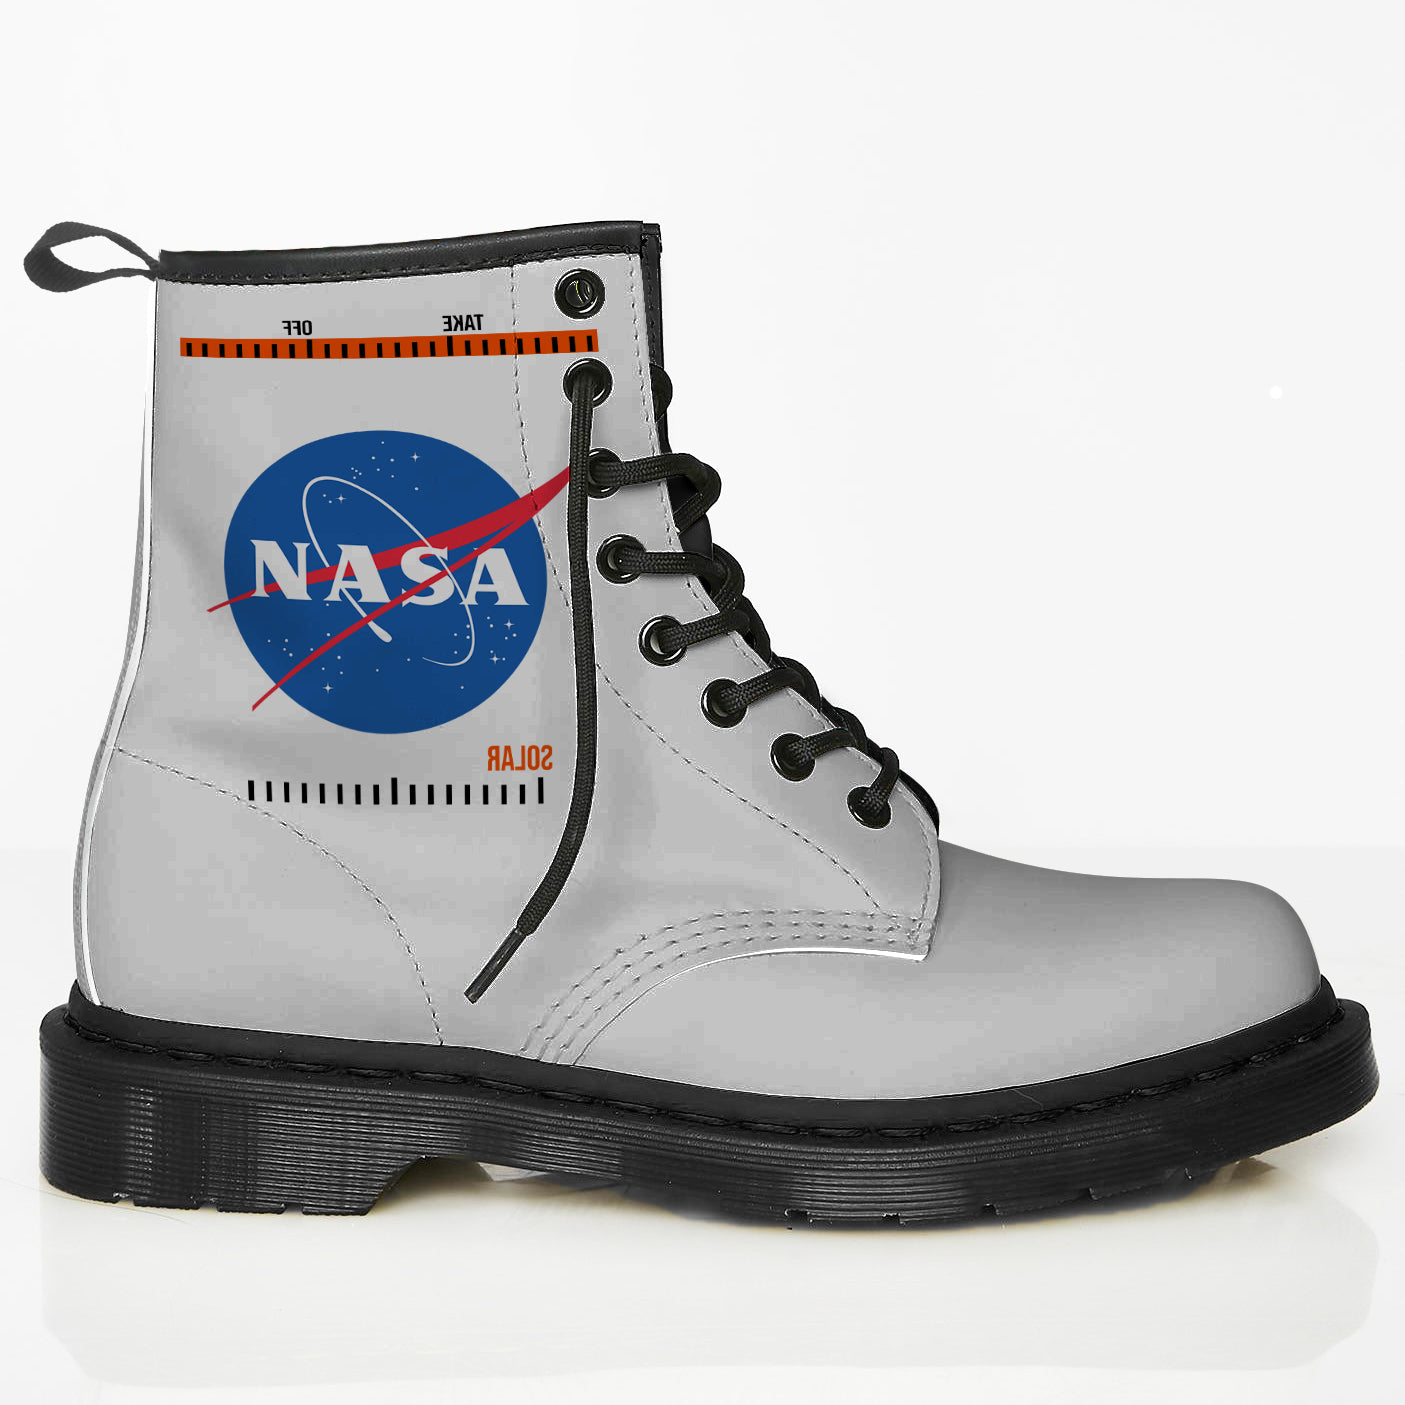 NASA Boots